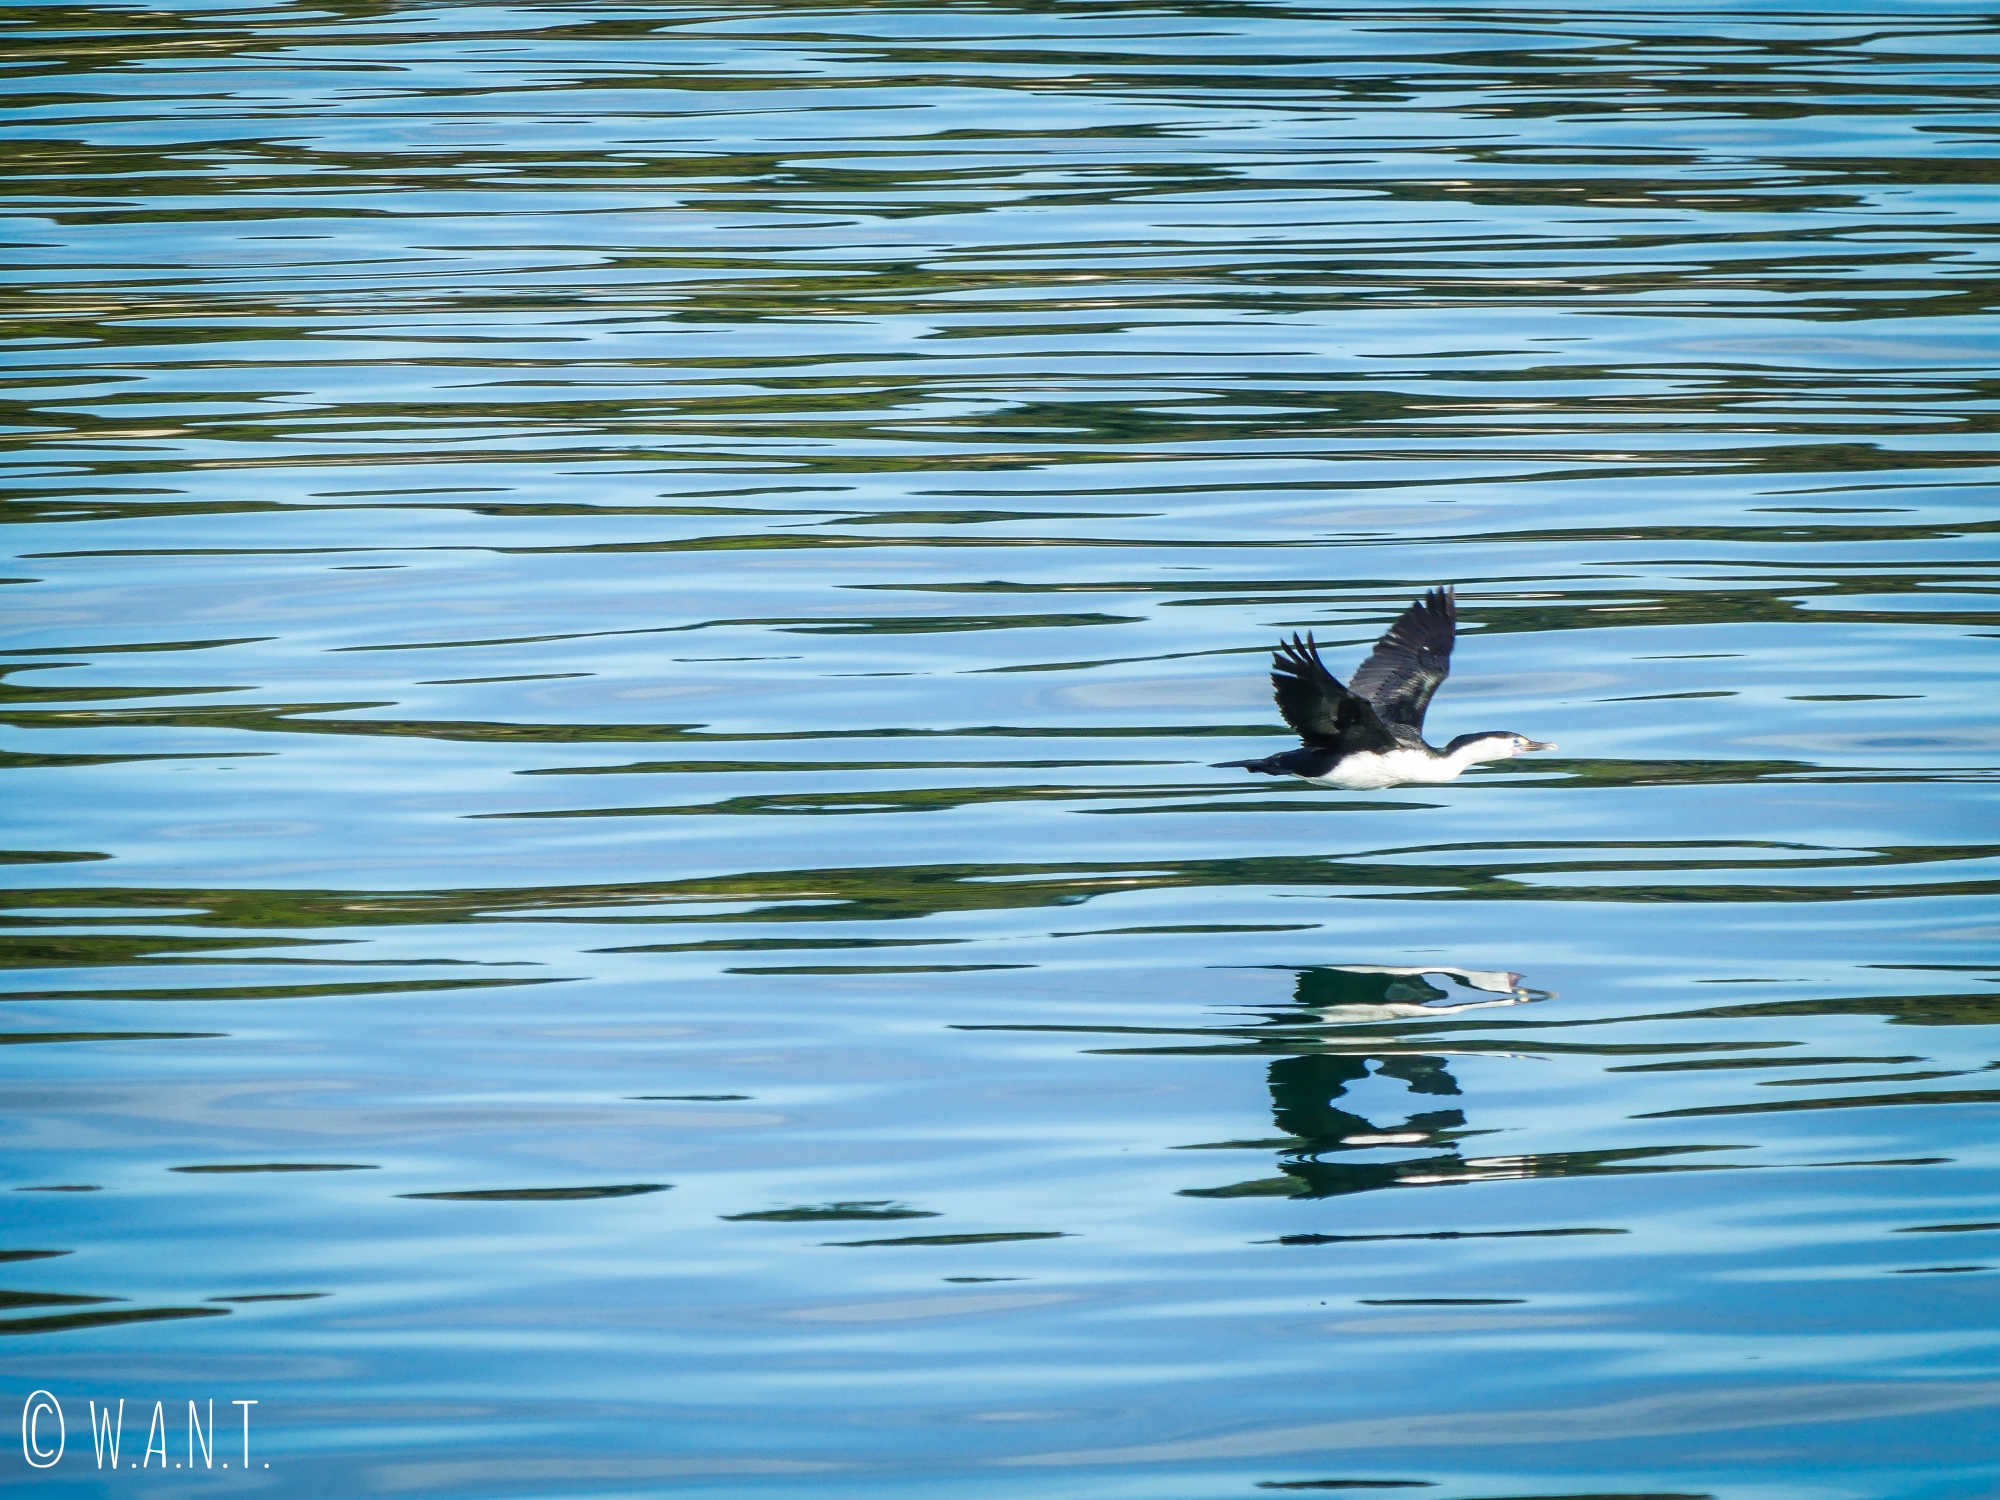 Vol de cormorant au-dessus des eaux de la baie de Tasman en Nouvelle-Zélande